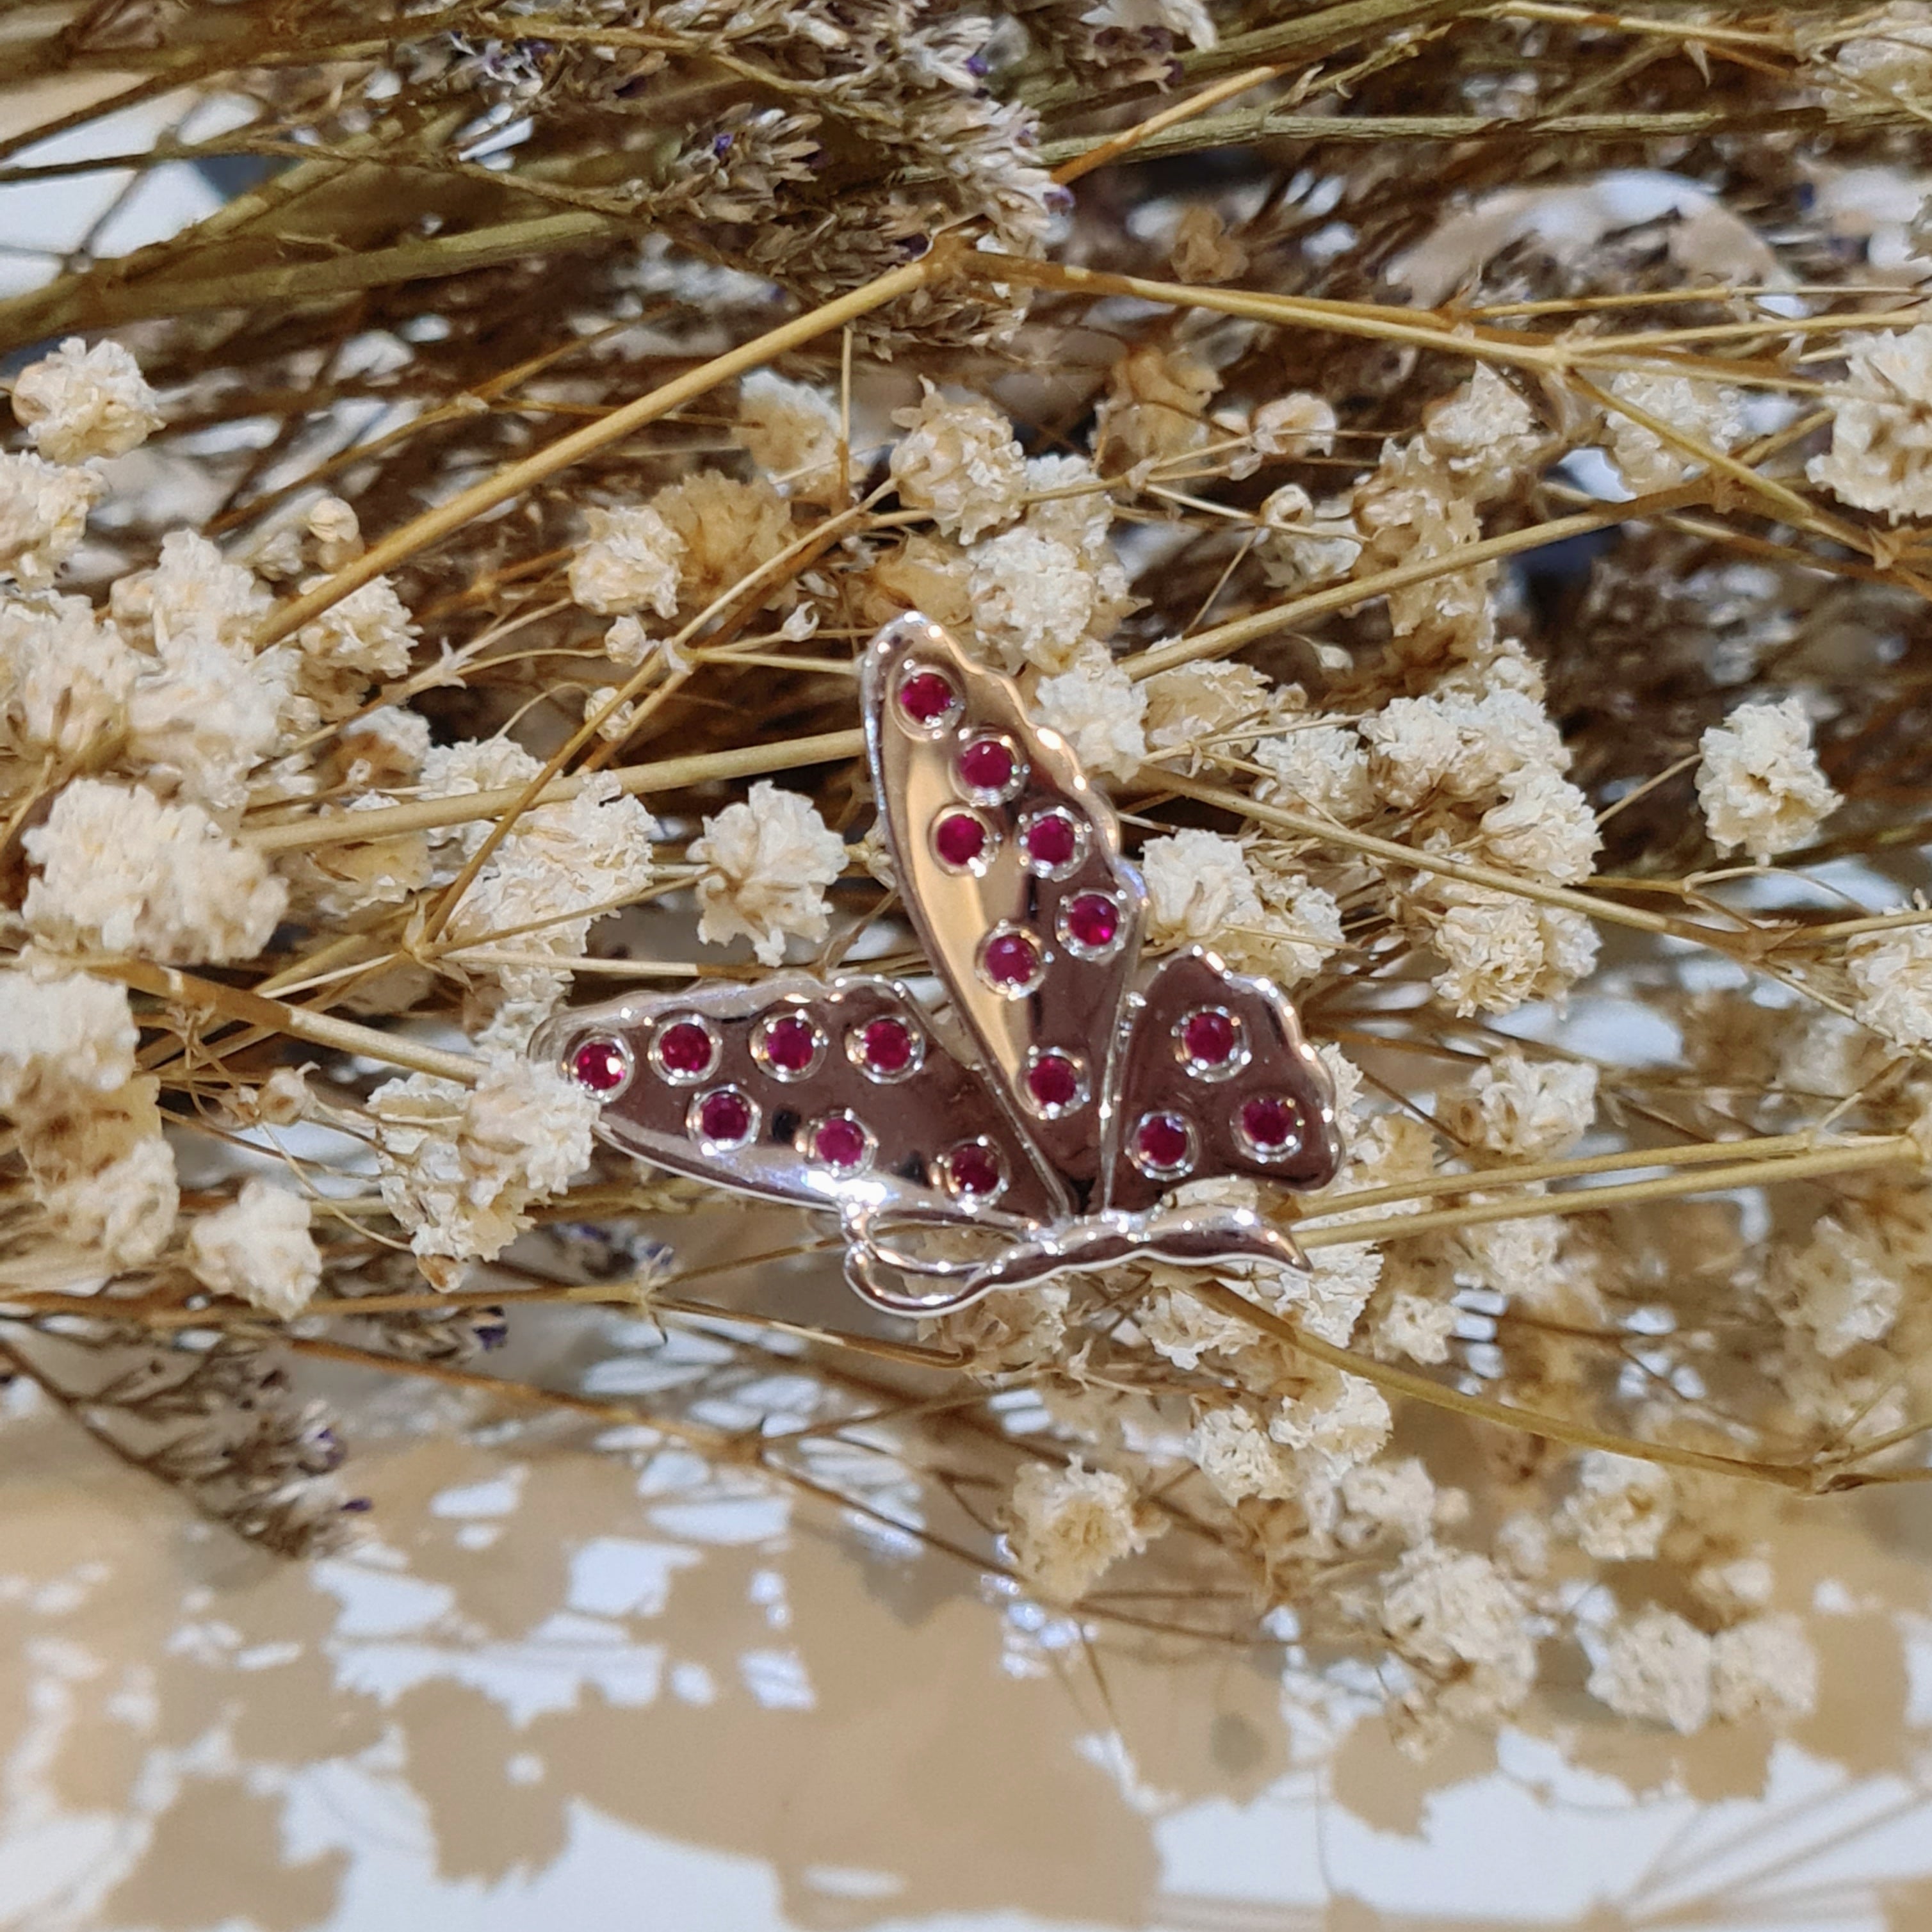 Butterfly 2 in 1 Brooch & Pendant